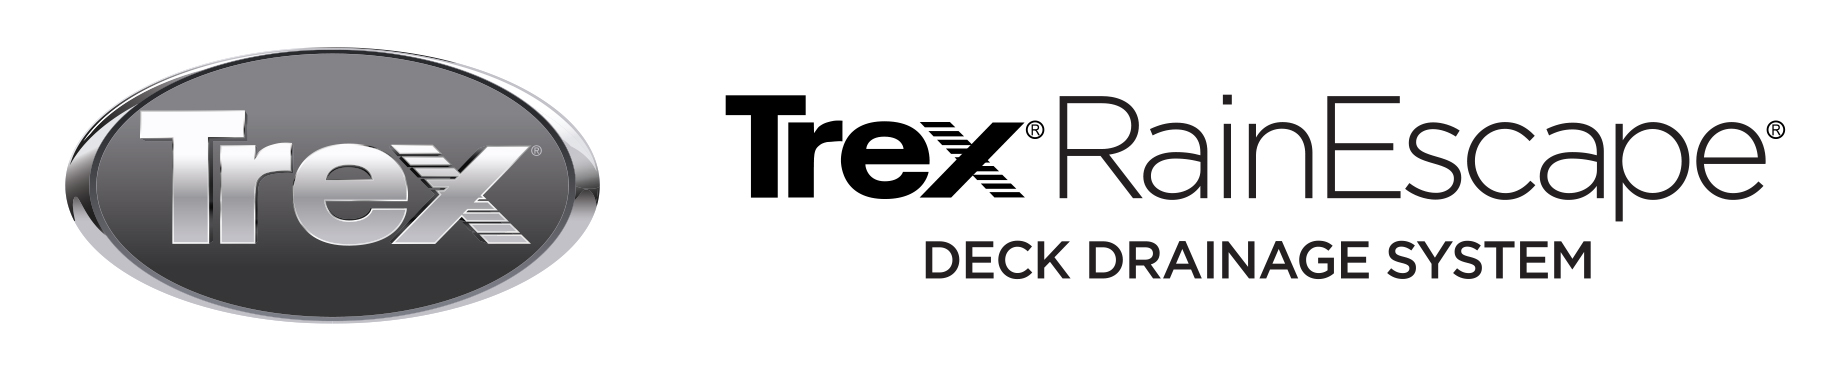 Shop for Trex RainEscape Deck Drainage System